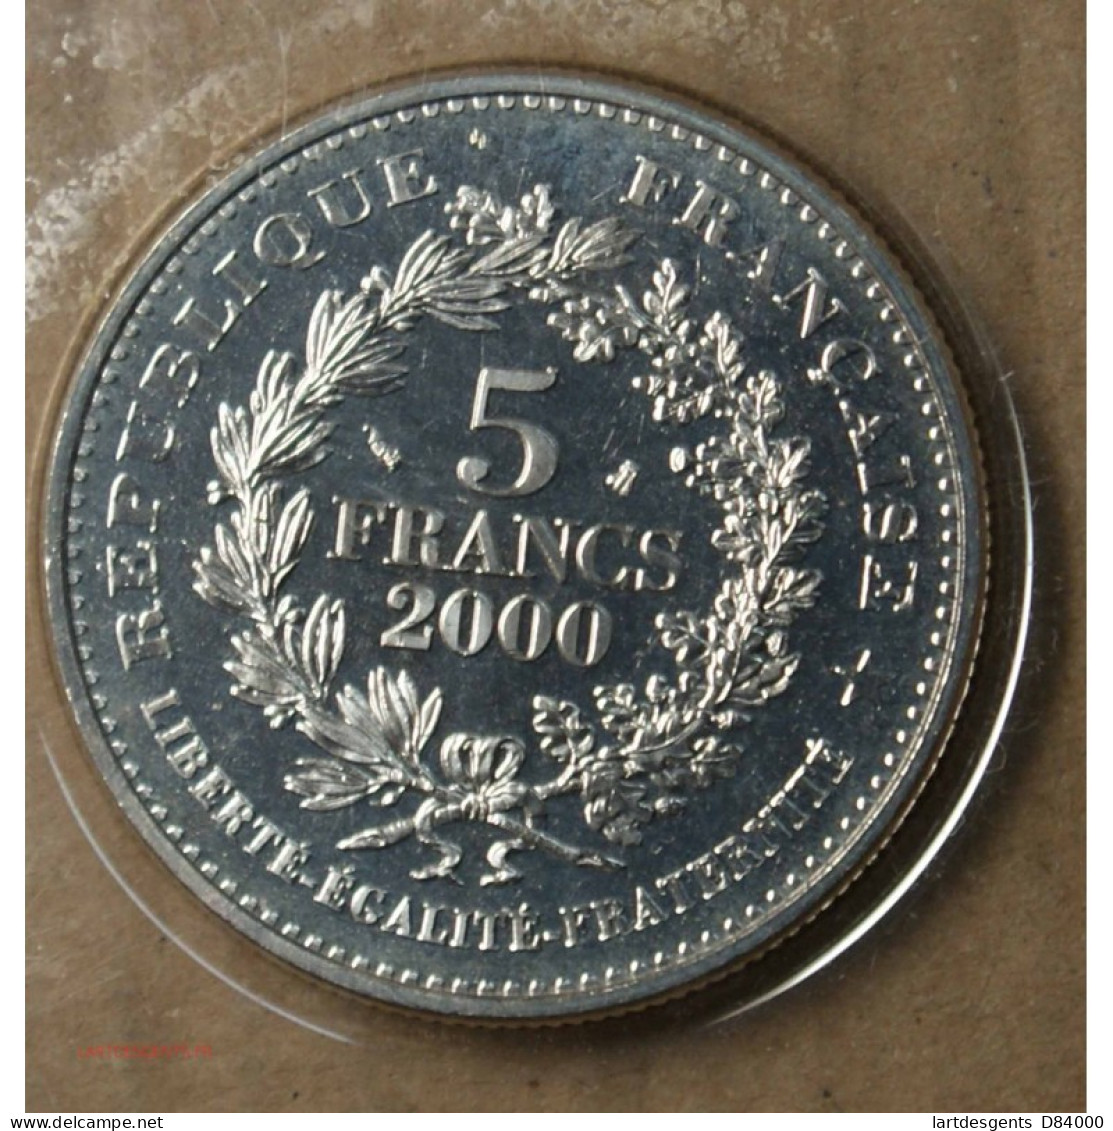 FRANCE, 5 Francs 2000 Statère De PARISII FDC. Lartdesgents.fr - 1/4 Franc